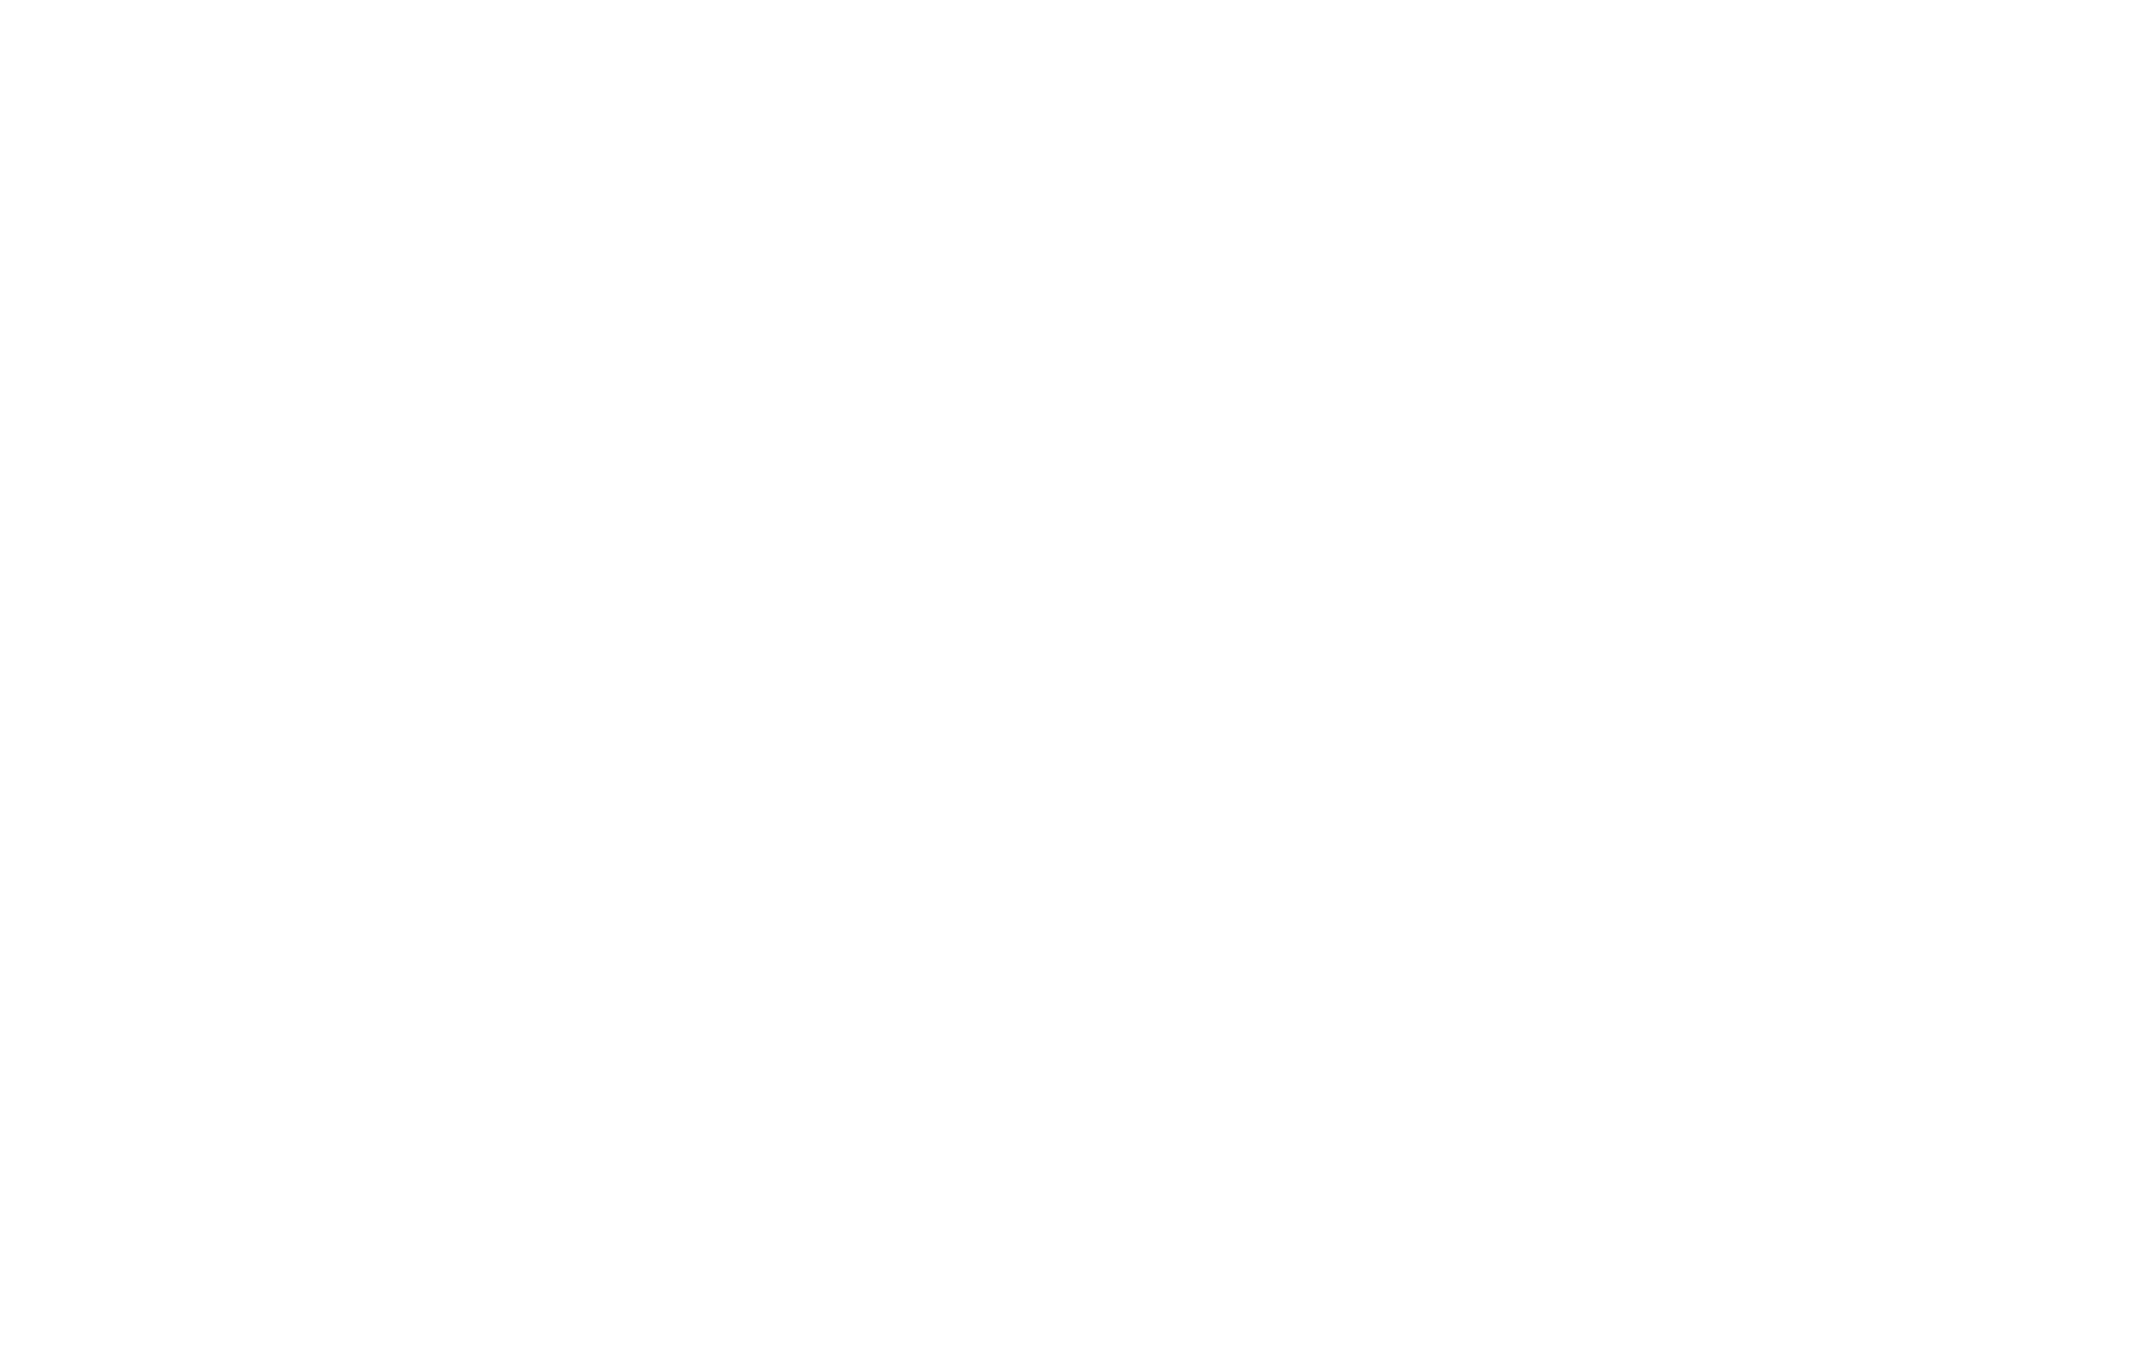 Sami Frasheri